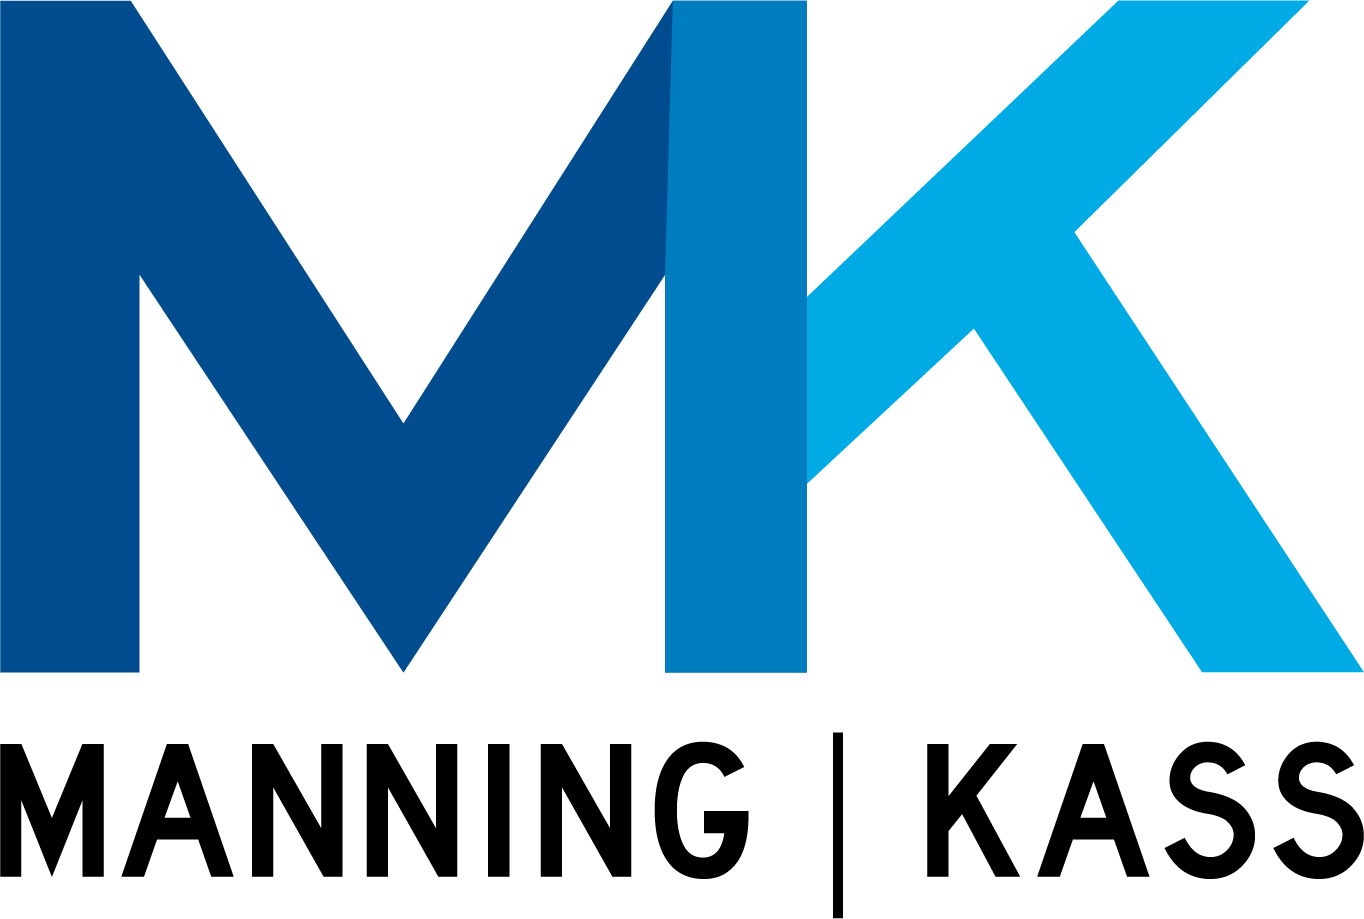 Manning Kass logo 